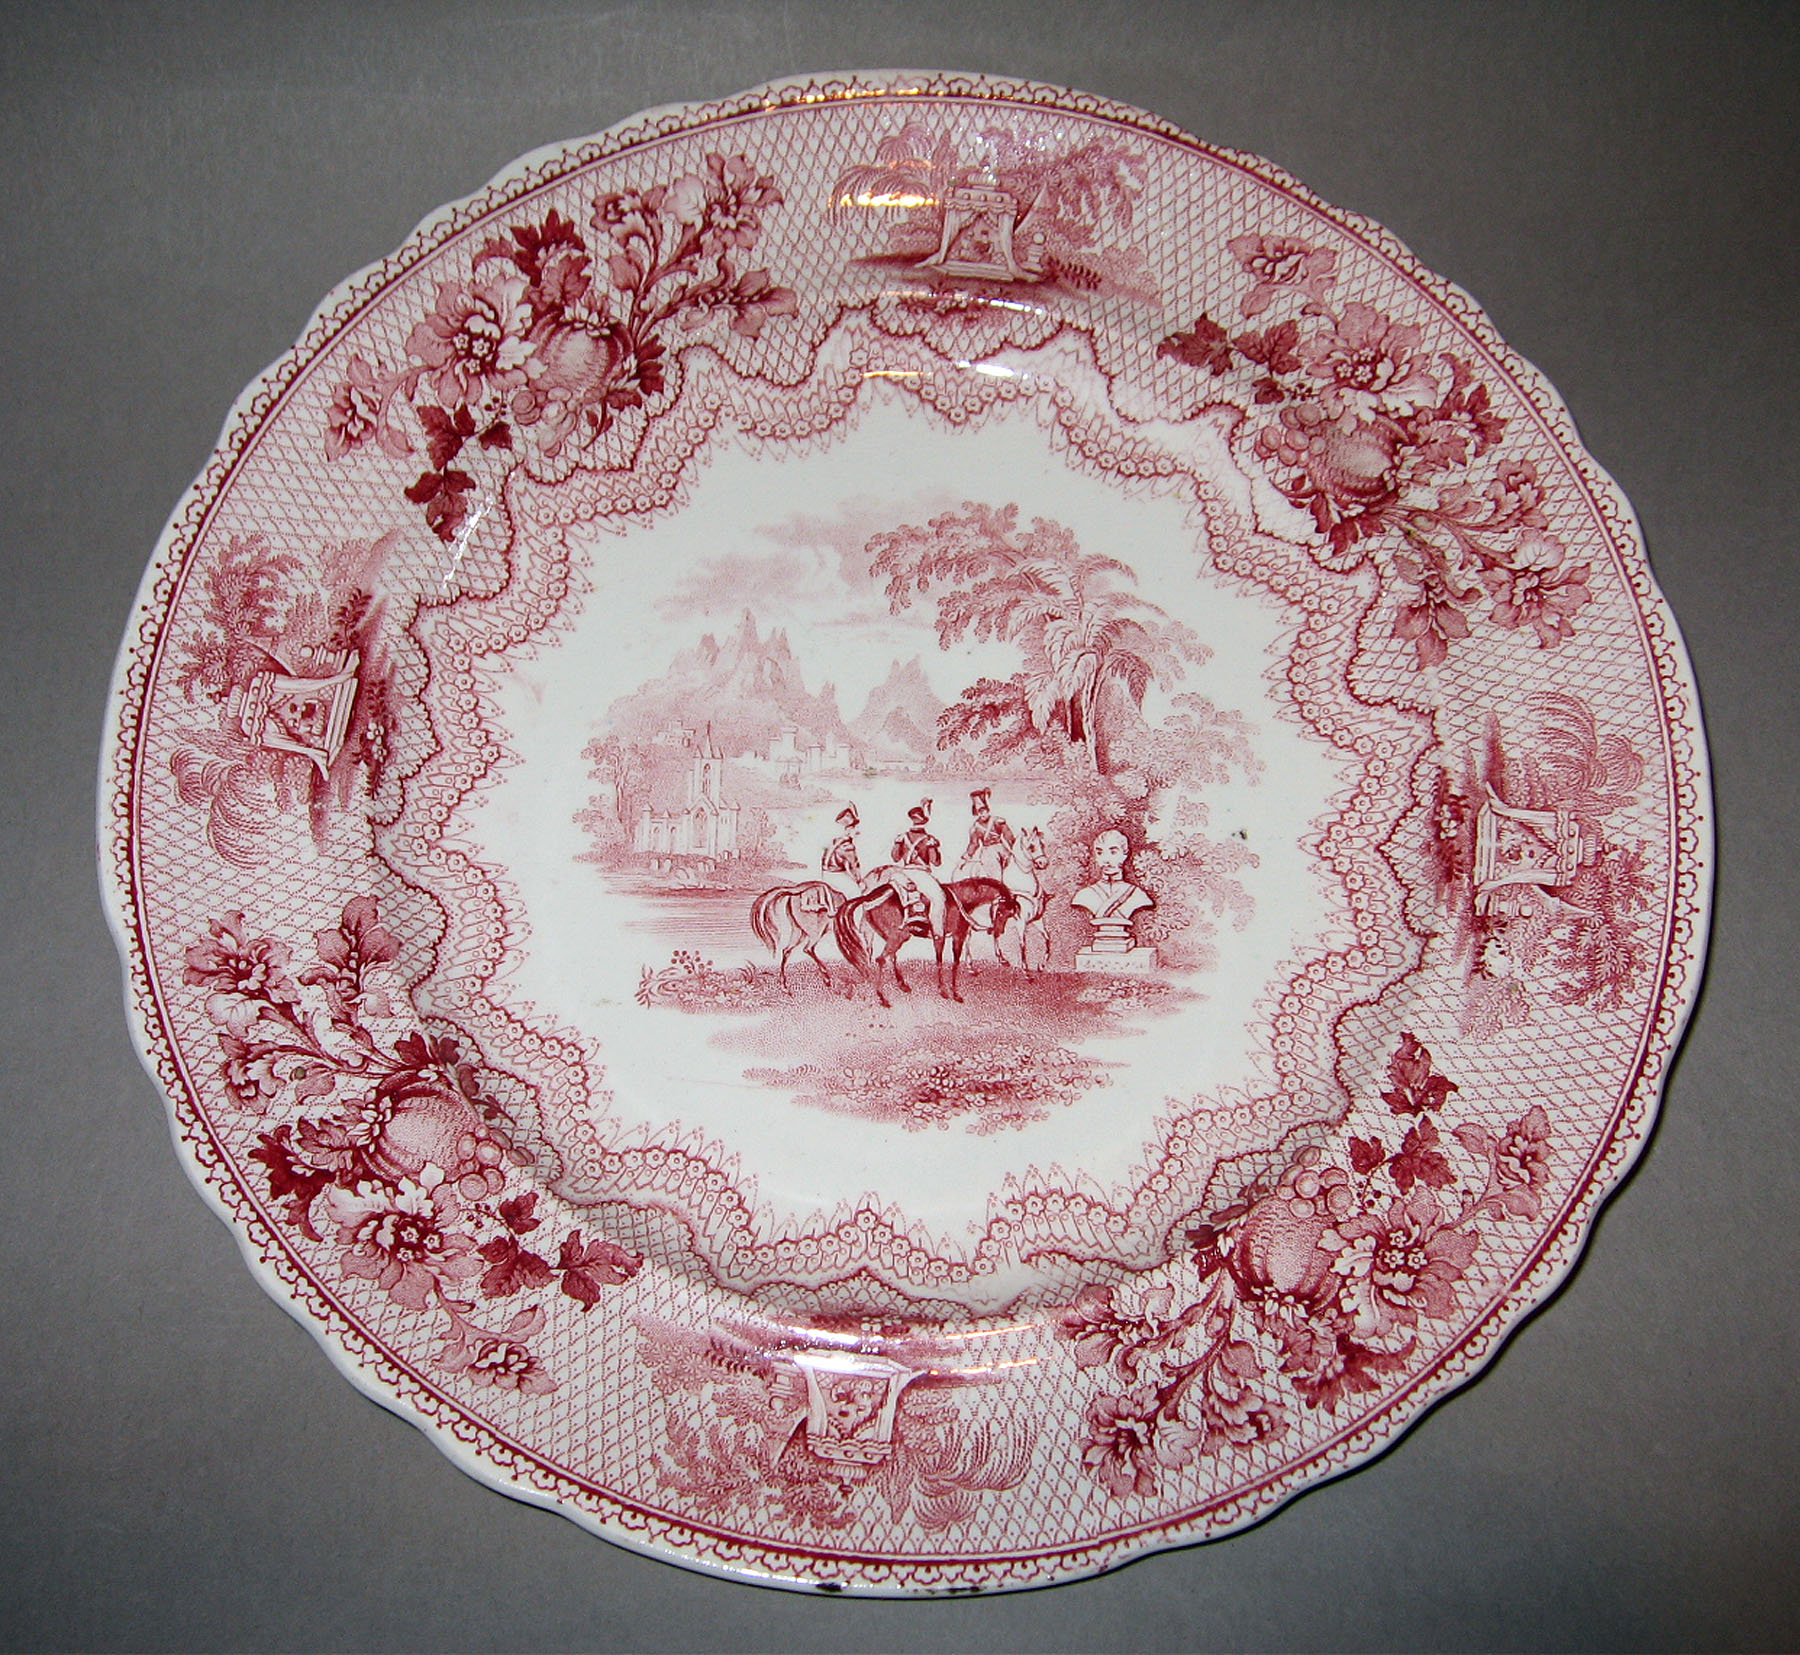 1961.0441.005 Heath earthenware plate